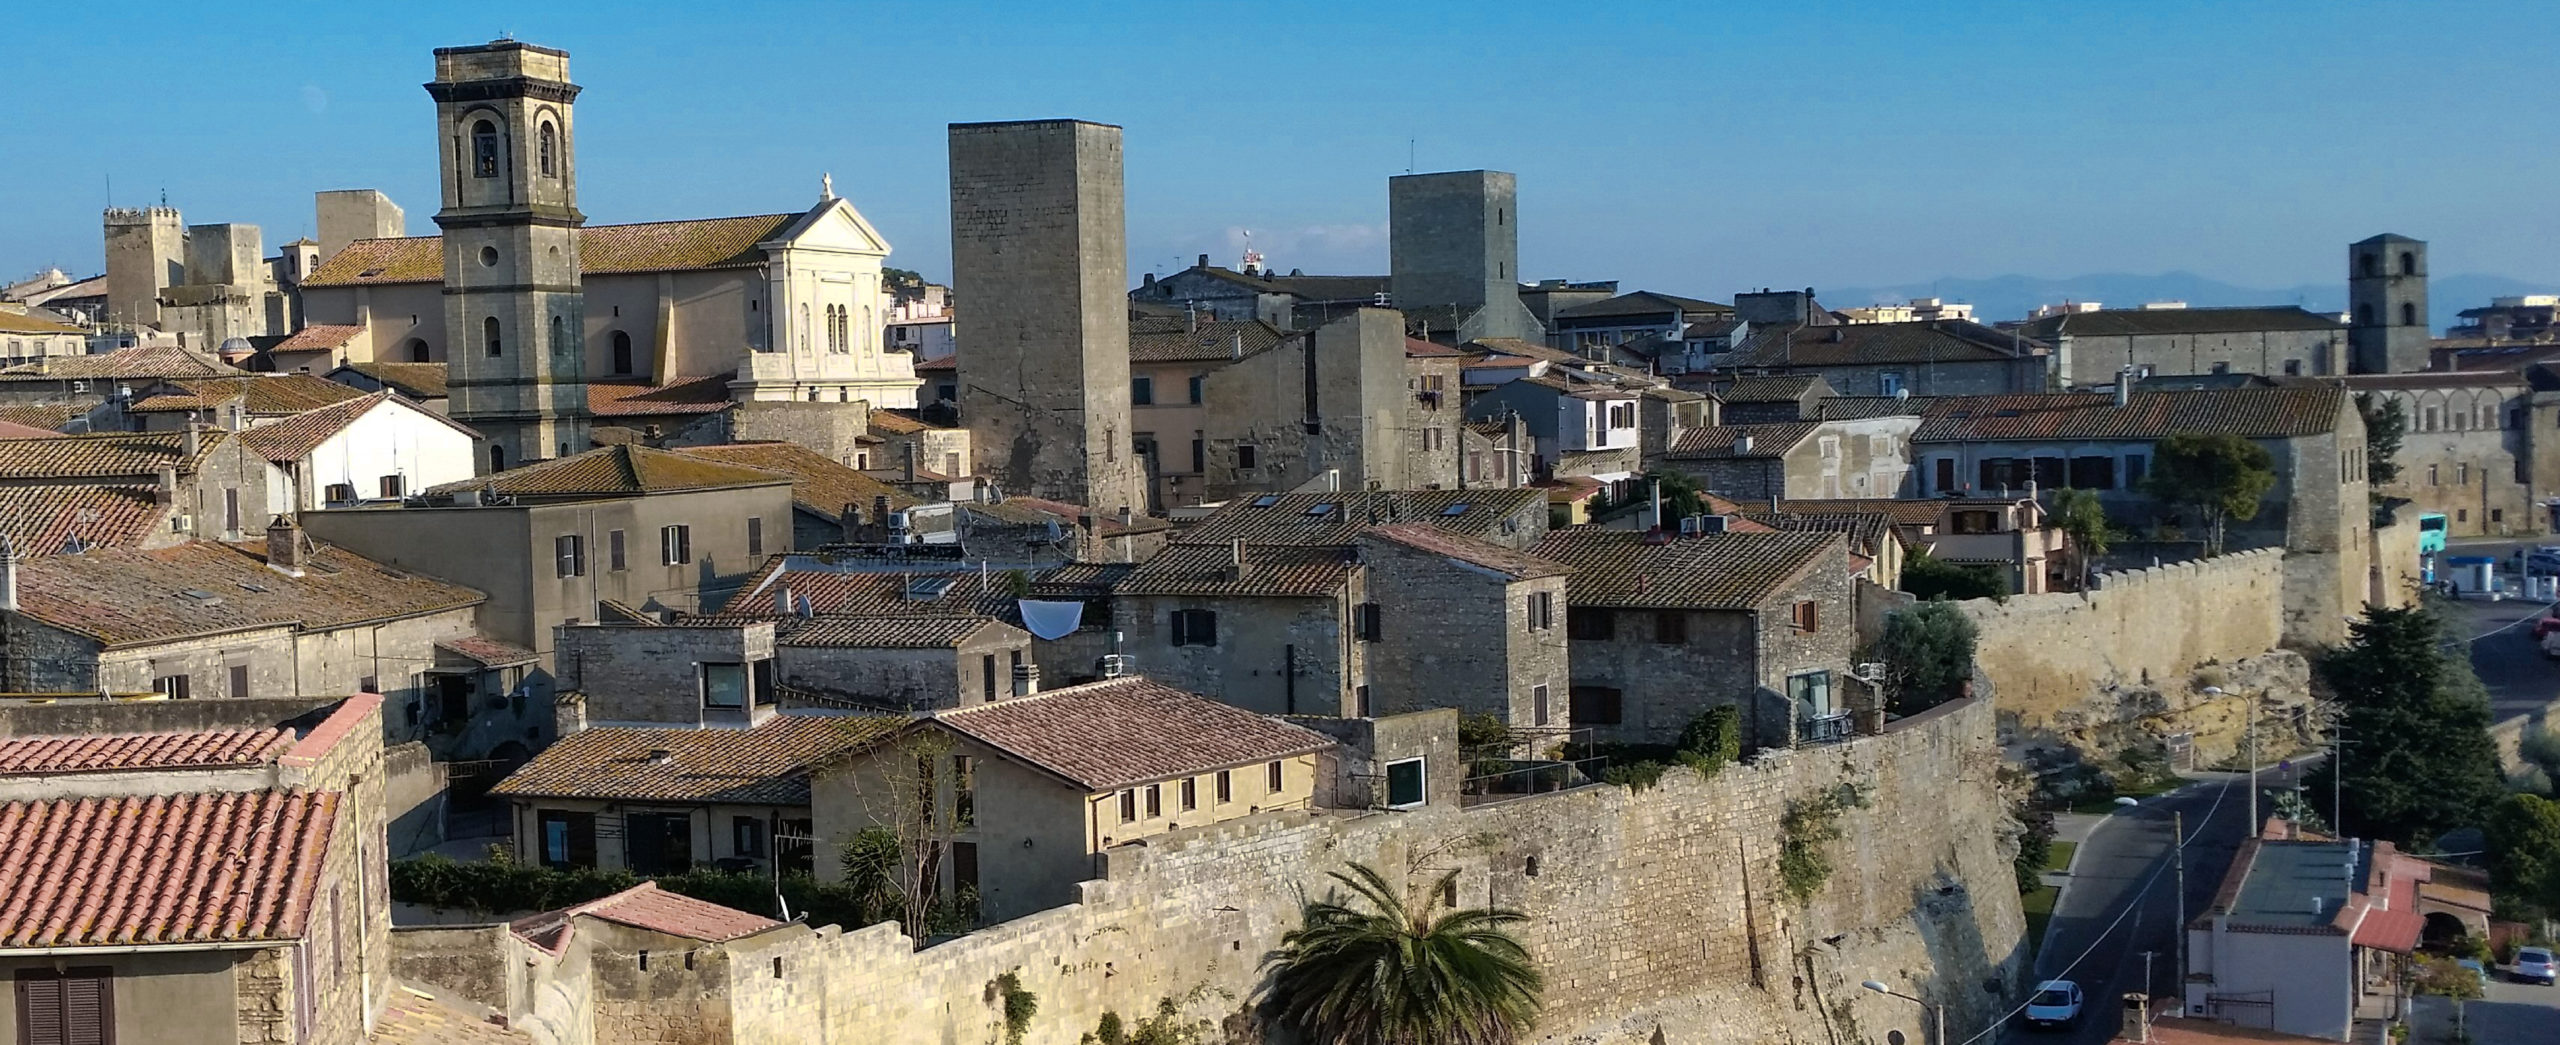 Tarquinia - Il duomo di Santa Margherita, le torri e le mura del borgo